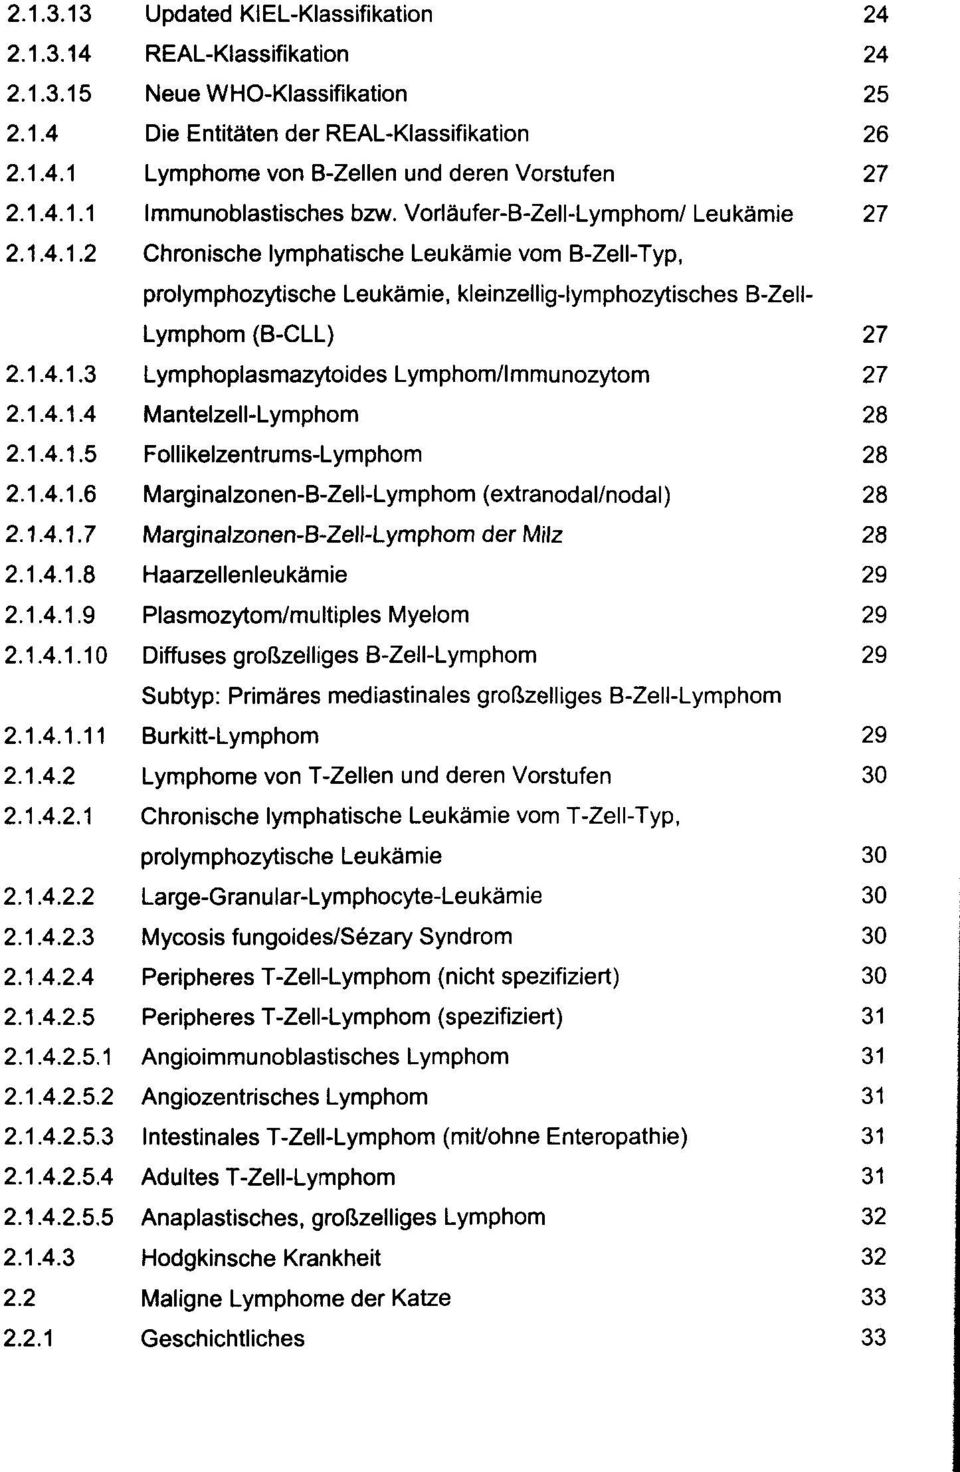 1.4.1.3 Lymphoplasmazytoides Lymphom/Immunozytom 27 2.1.4.1.4 Mantelzell-Lymphom 28 2.1.4.1.5 Follikelzentrums-Lymphom 28 2.1.4.1.6 Marginalzonen-B-Zell-Lymphom (extranodal/nodal) 28 2.1.4.1.7 Marginalzonen-B-Zell-Lymphom der Milz 28 2.